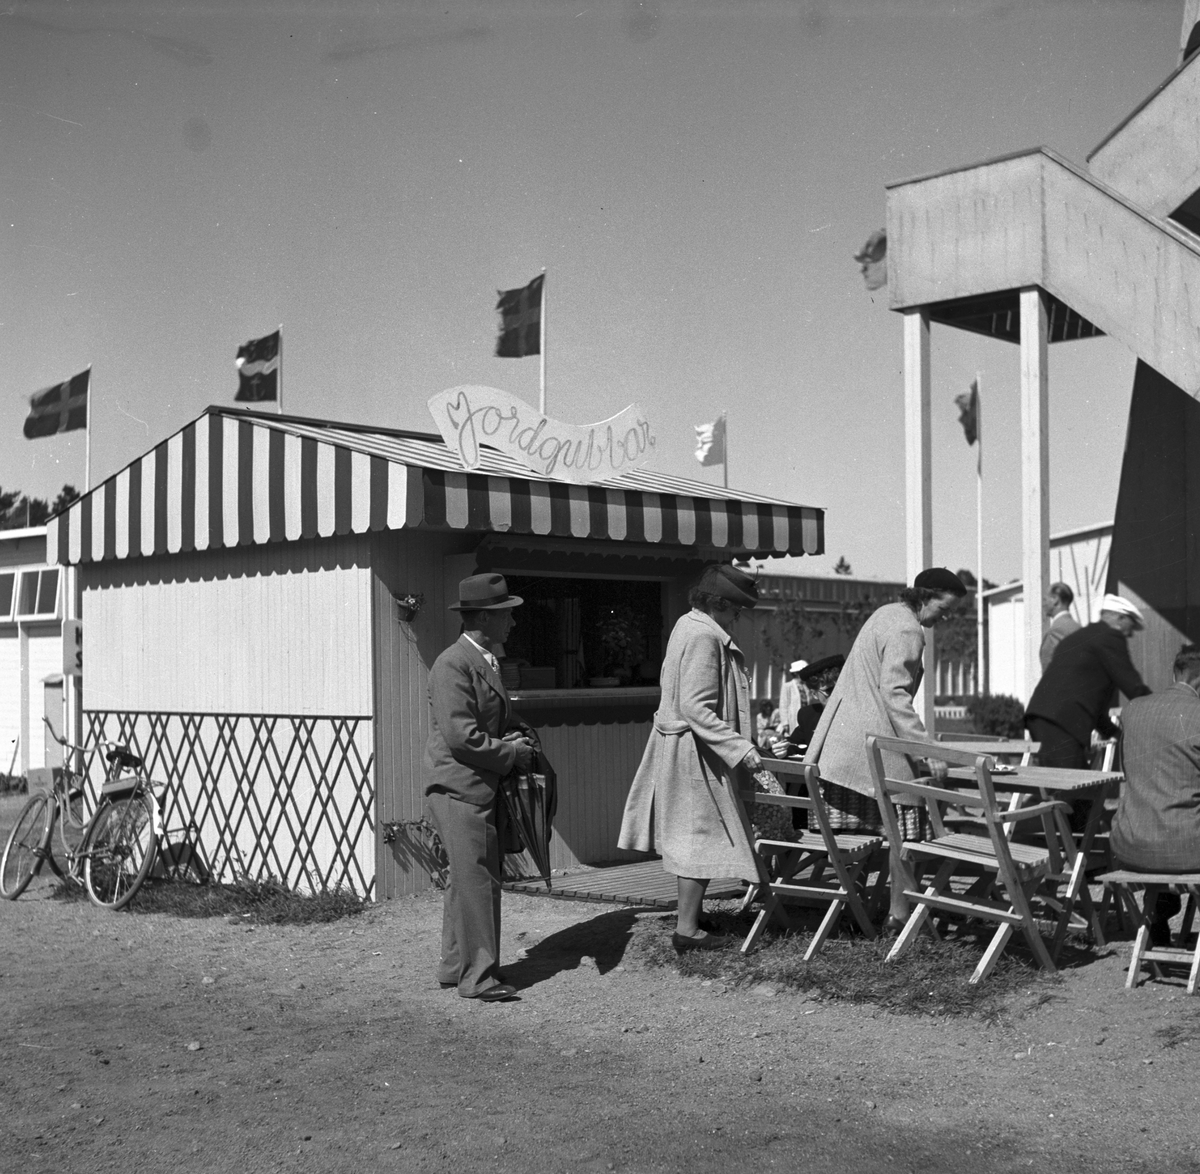 Jorgubbsförsäljning på Gävleutställningen 1946 på Travbanan med anledning av Gävle stads 500-årsjubileum

